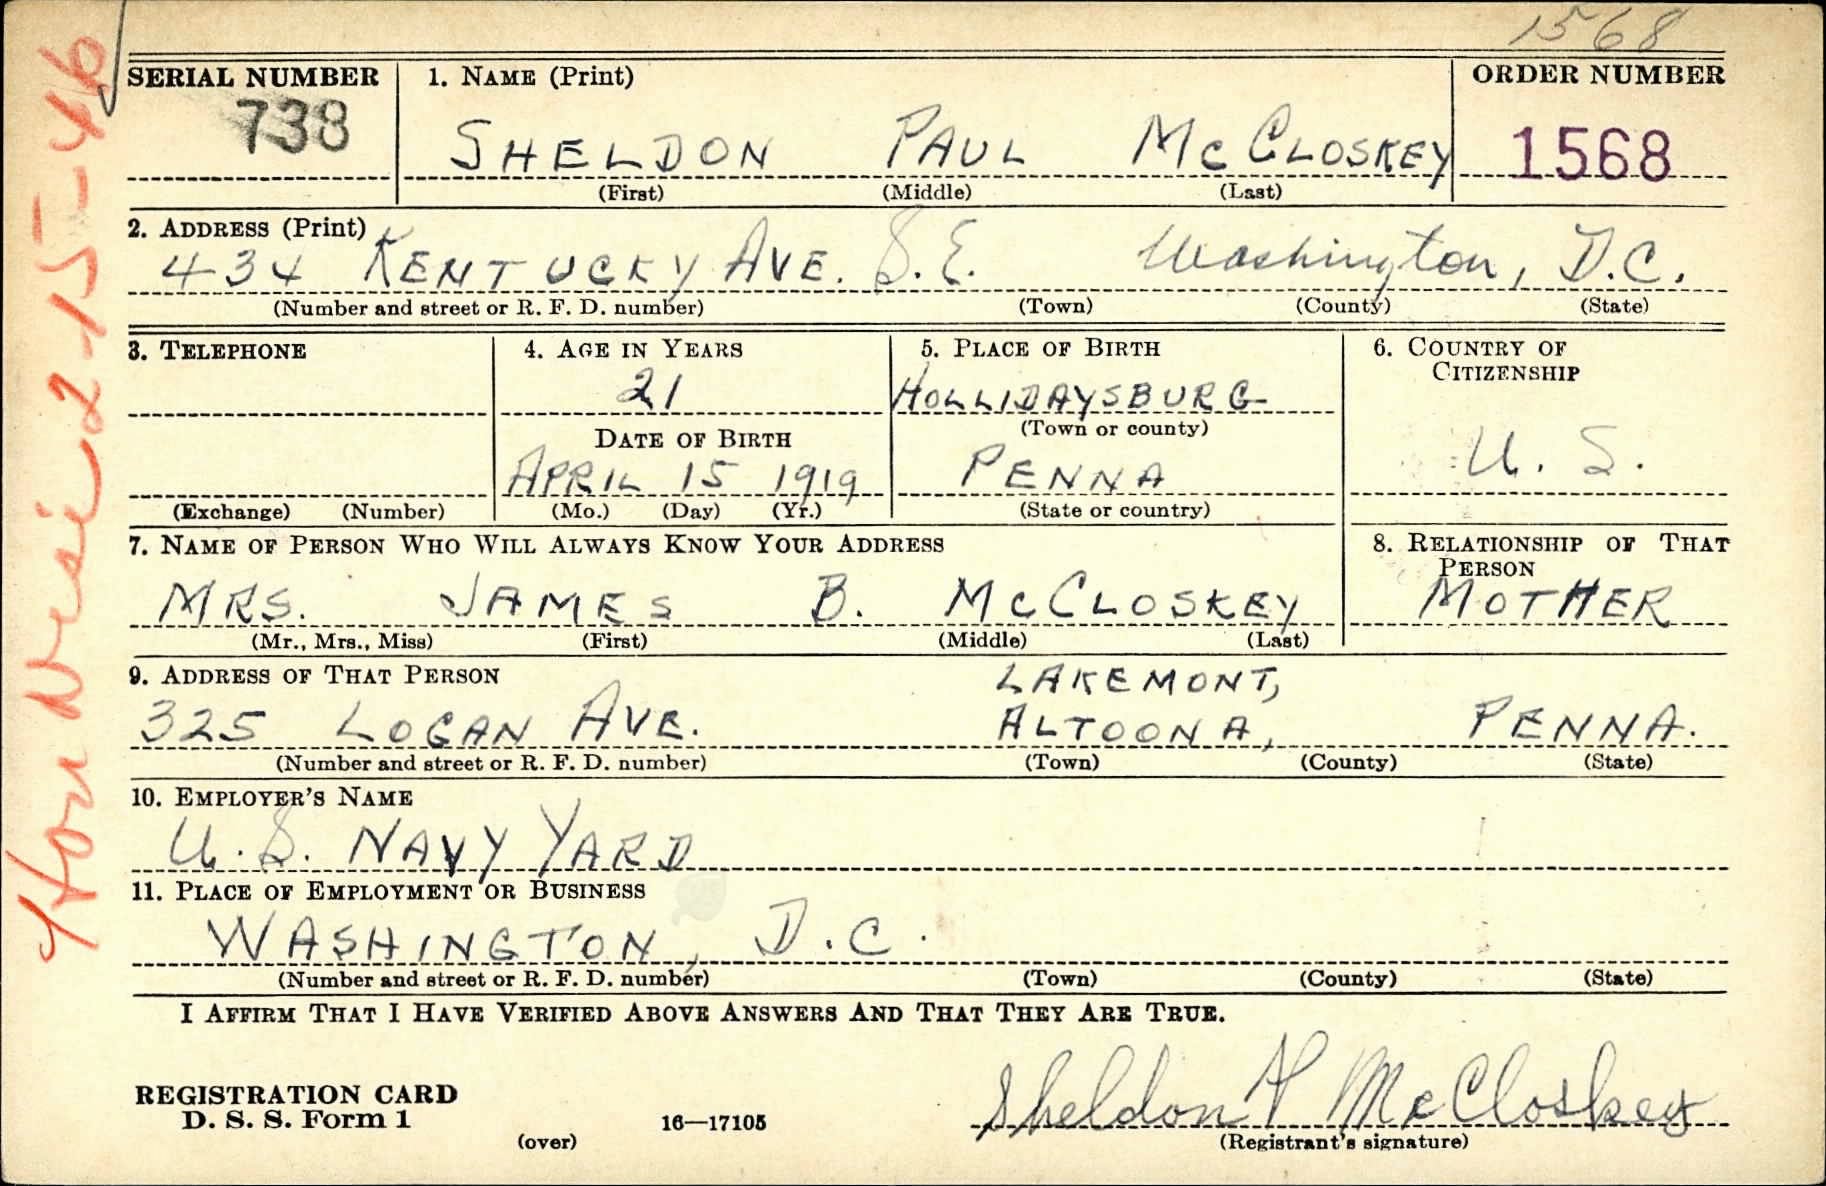 World War II Draft Card for Sheldon McCloskey